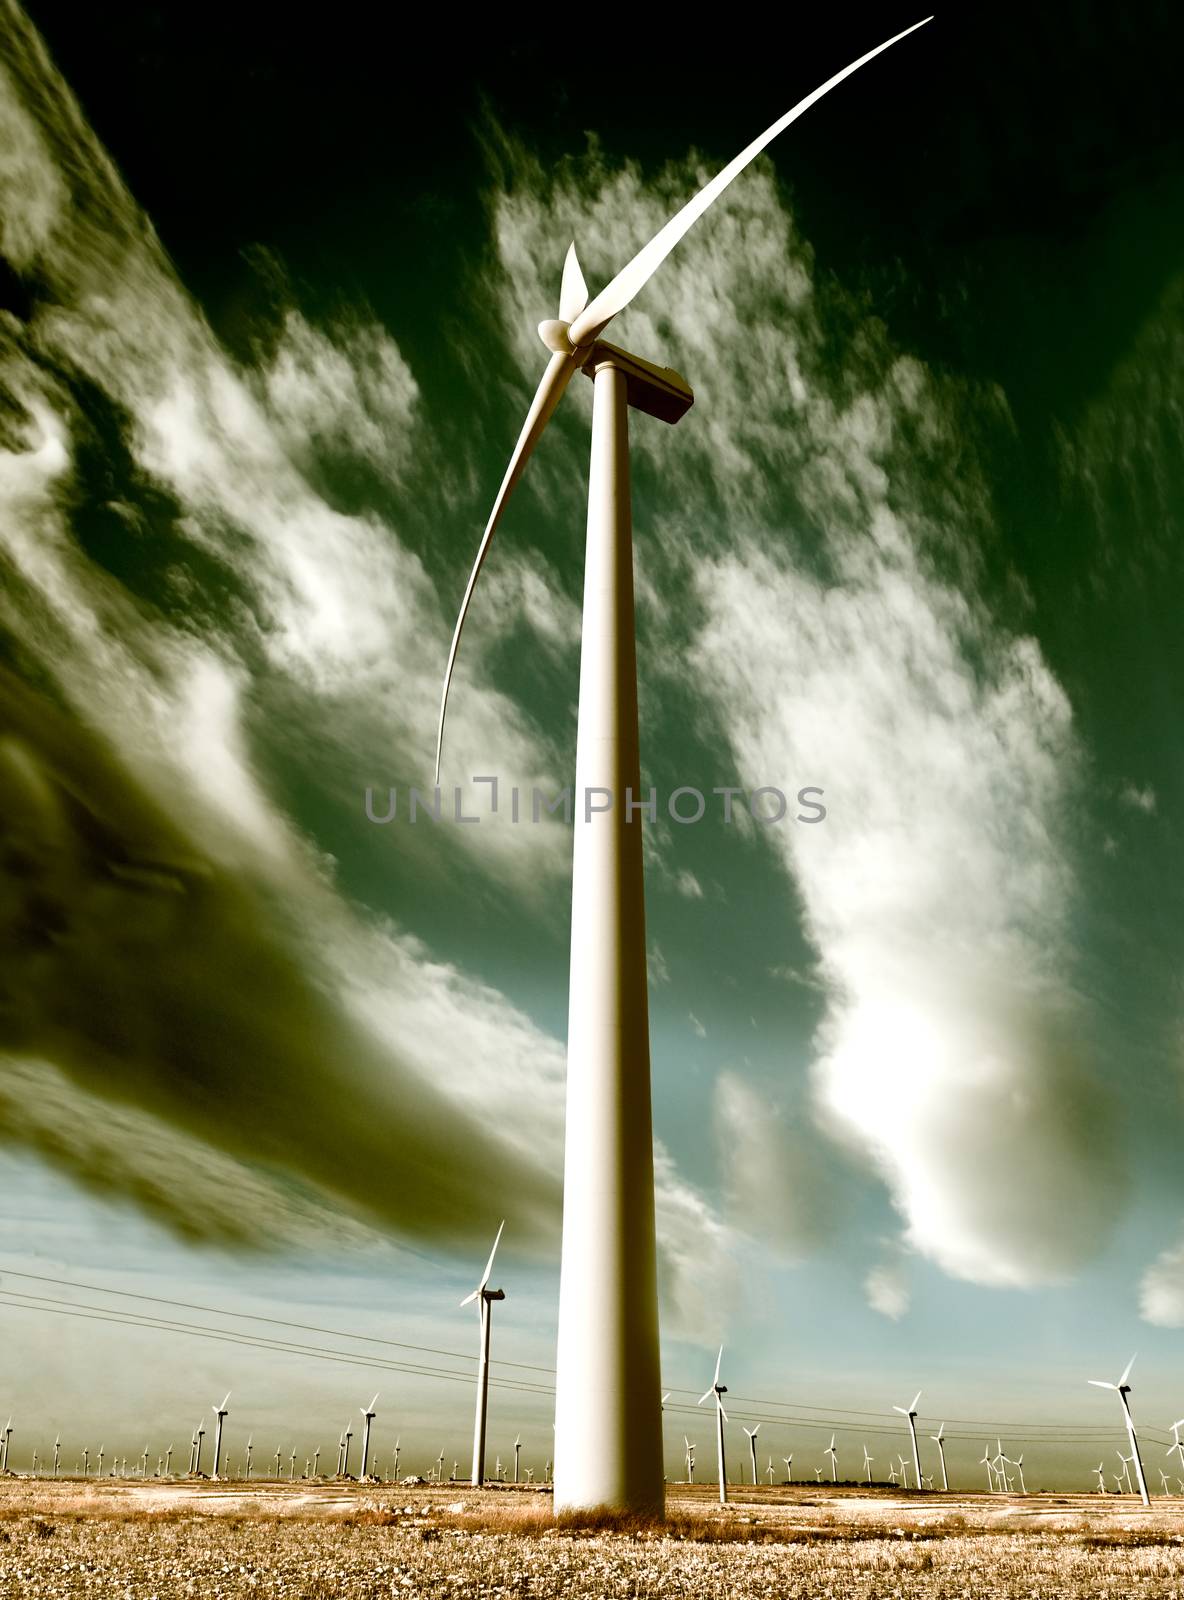 wind turbine by carloscastilla